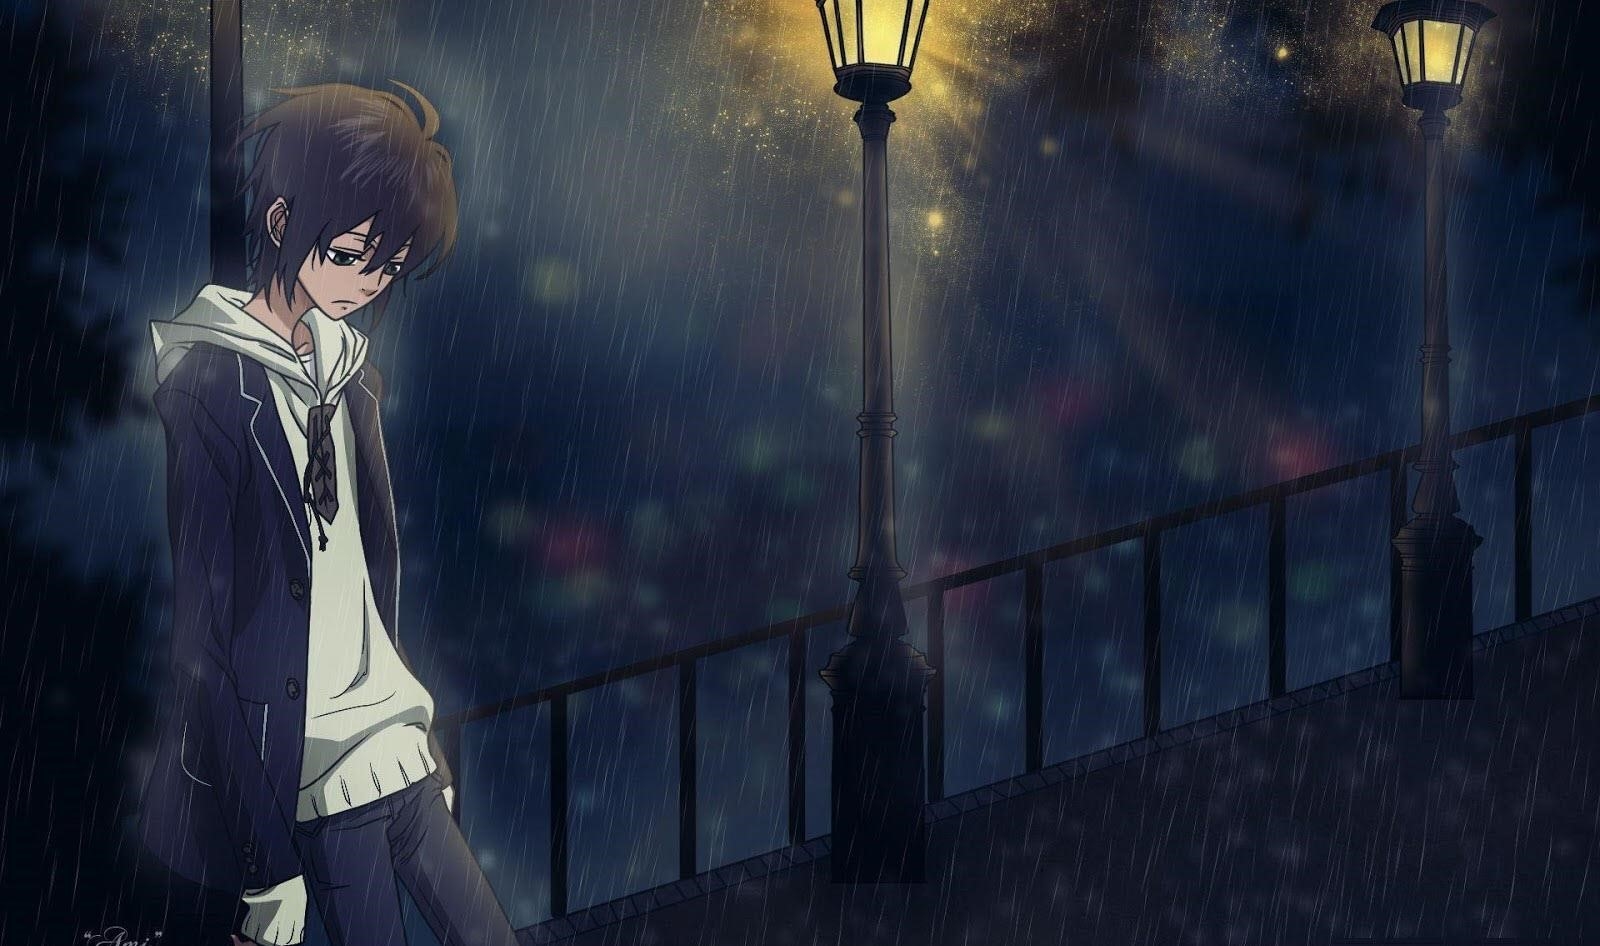 Ảnh anime cô đơn dưới mưa thể hiện một cảnh tượng đầy tâm trạng và đau đớn, khiến người xem cảm nhận được sự cô đơn và buồn bã trong tâm hồn của nhân vật.